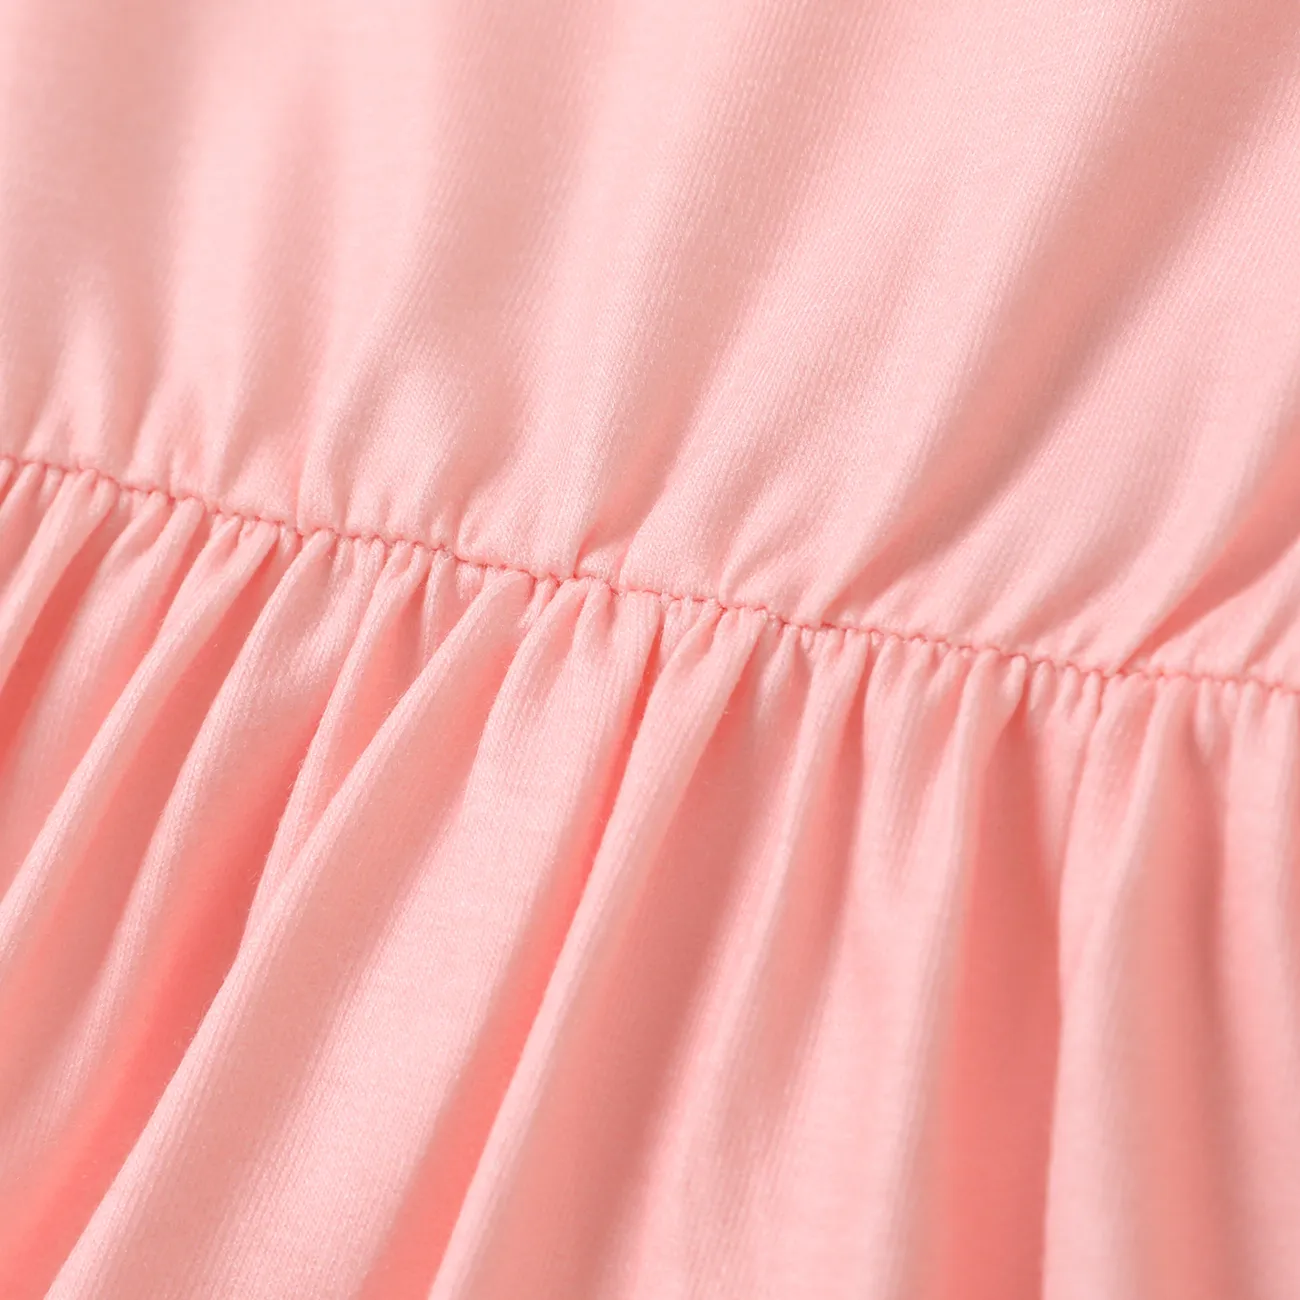 Baby Girl Sweet Rabbit Animal Pattern Long Sleeve Dress Pink big image 1